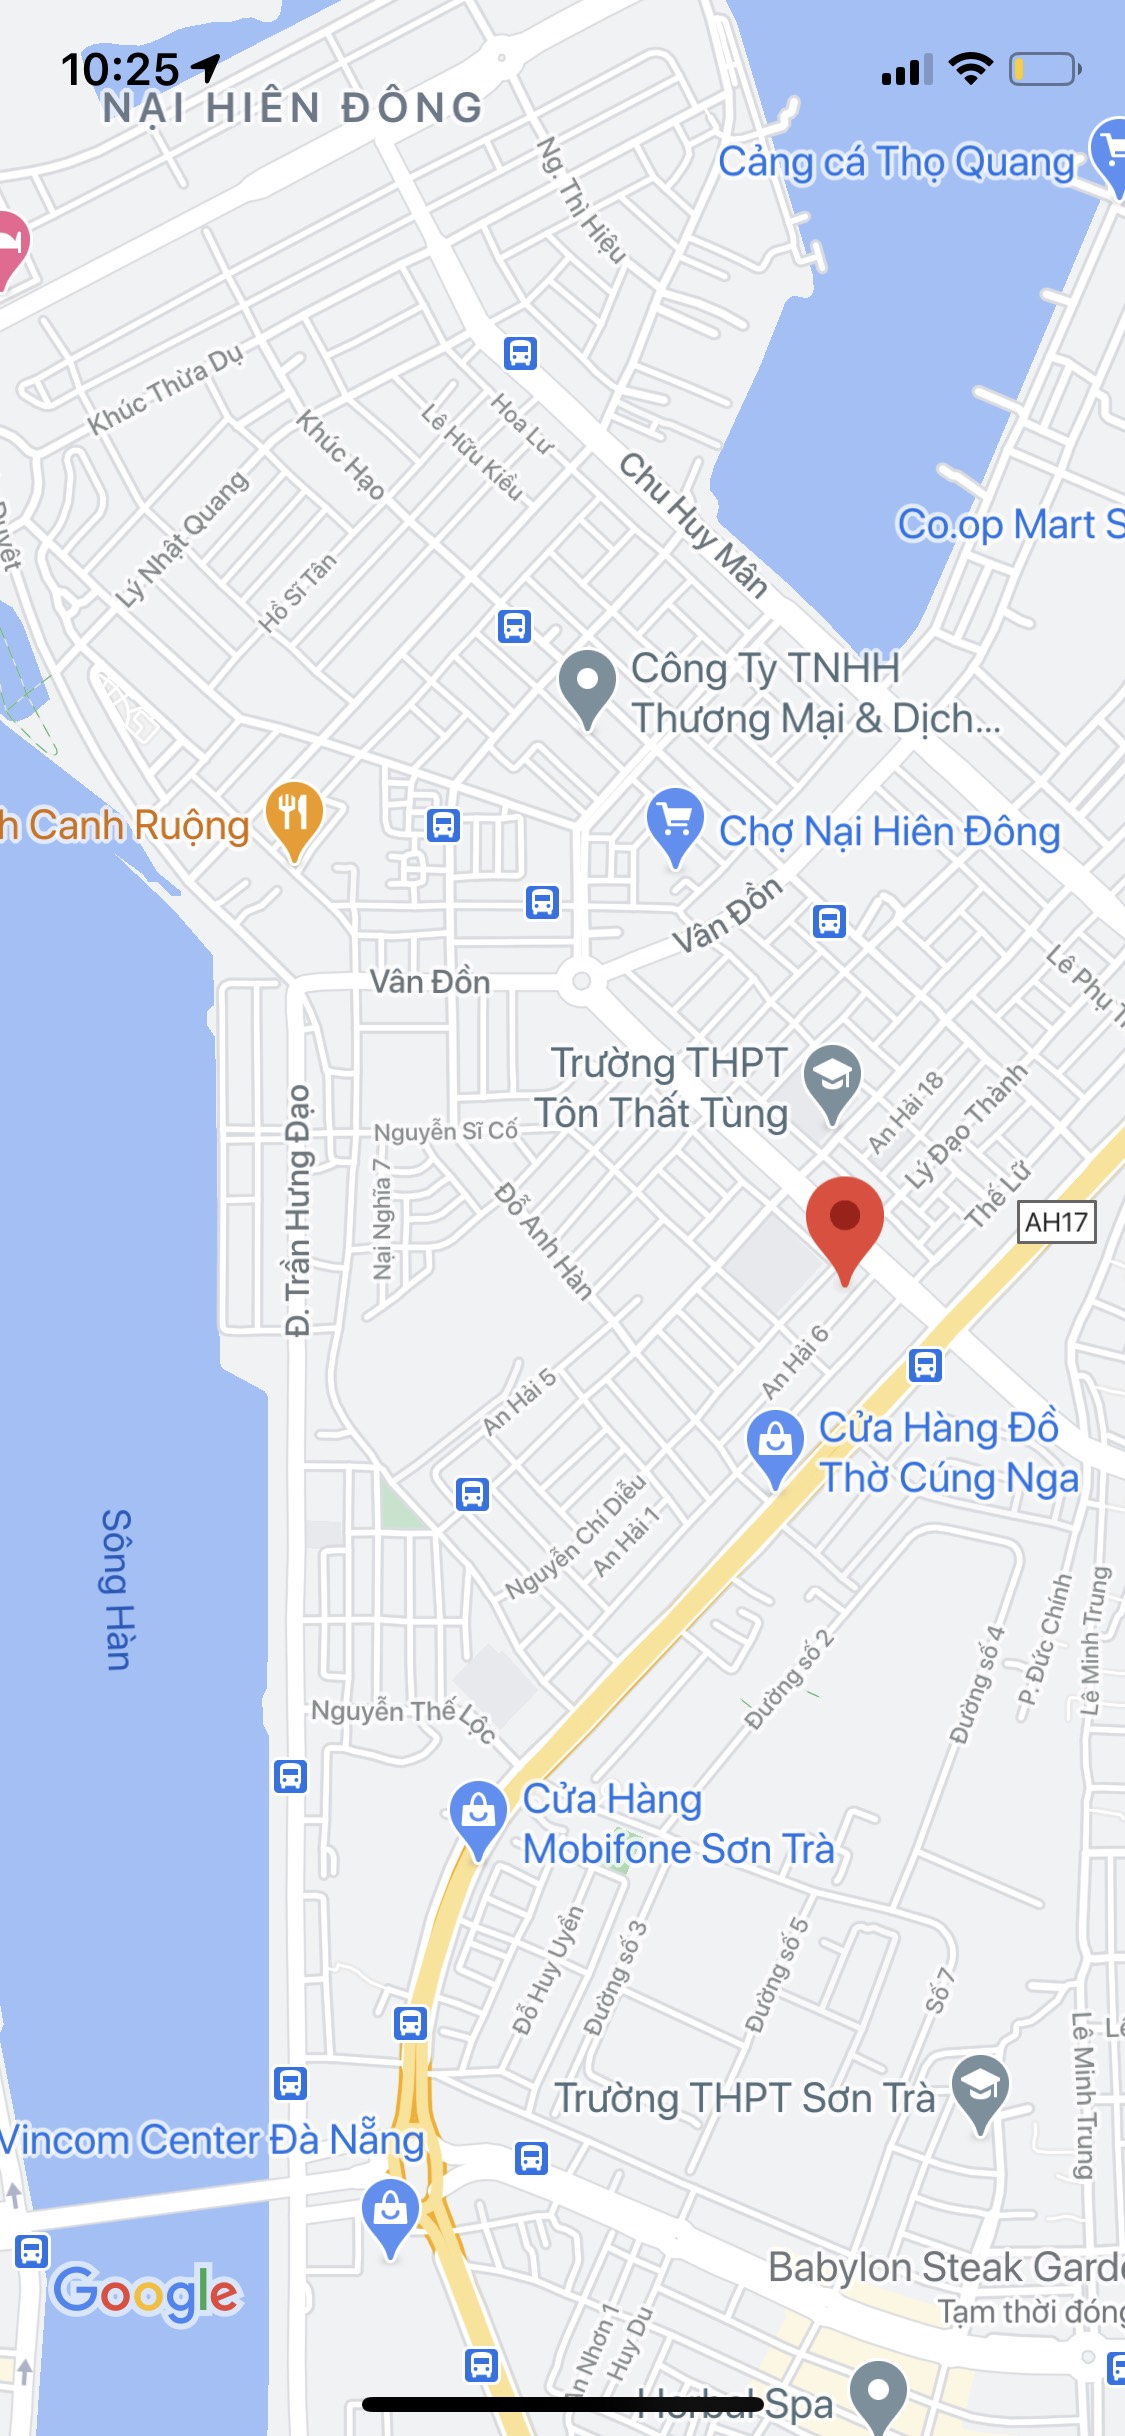 Bán nhà mặt tiền đường An Hải 6, P. An Hải Bắc, Q. Sơn Trà. DT: 73m2, khu dân cư. Gía: 4,45 tỷ